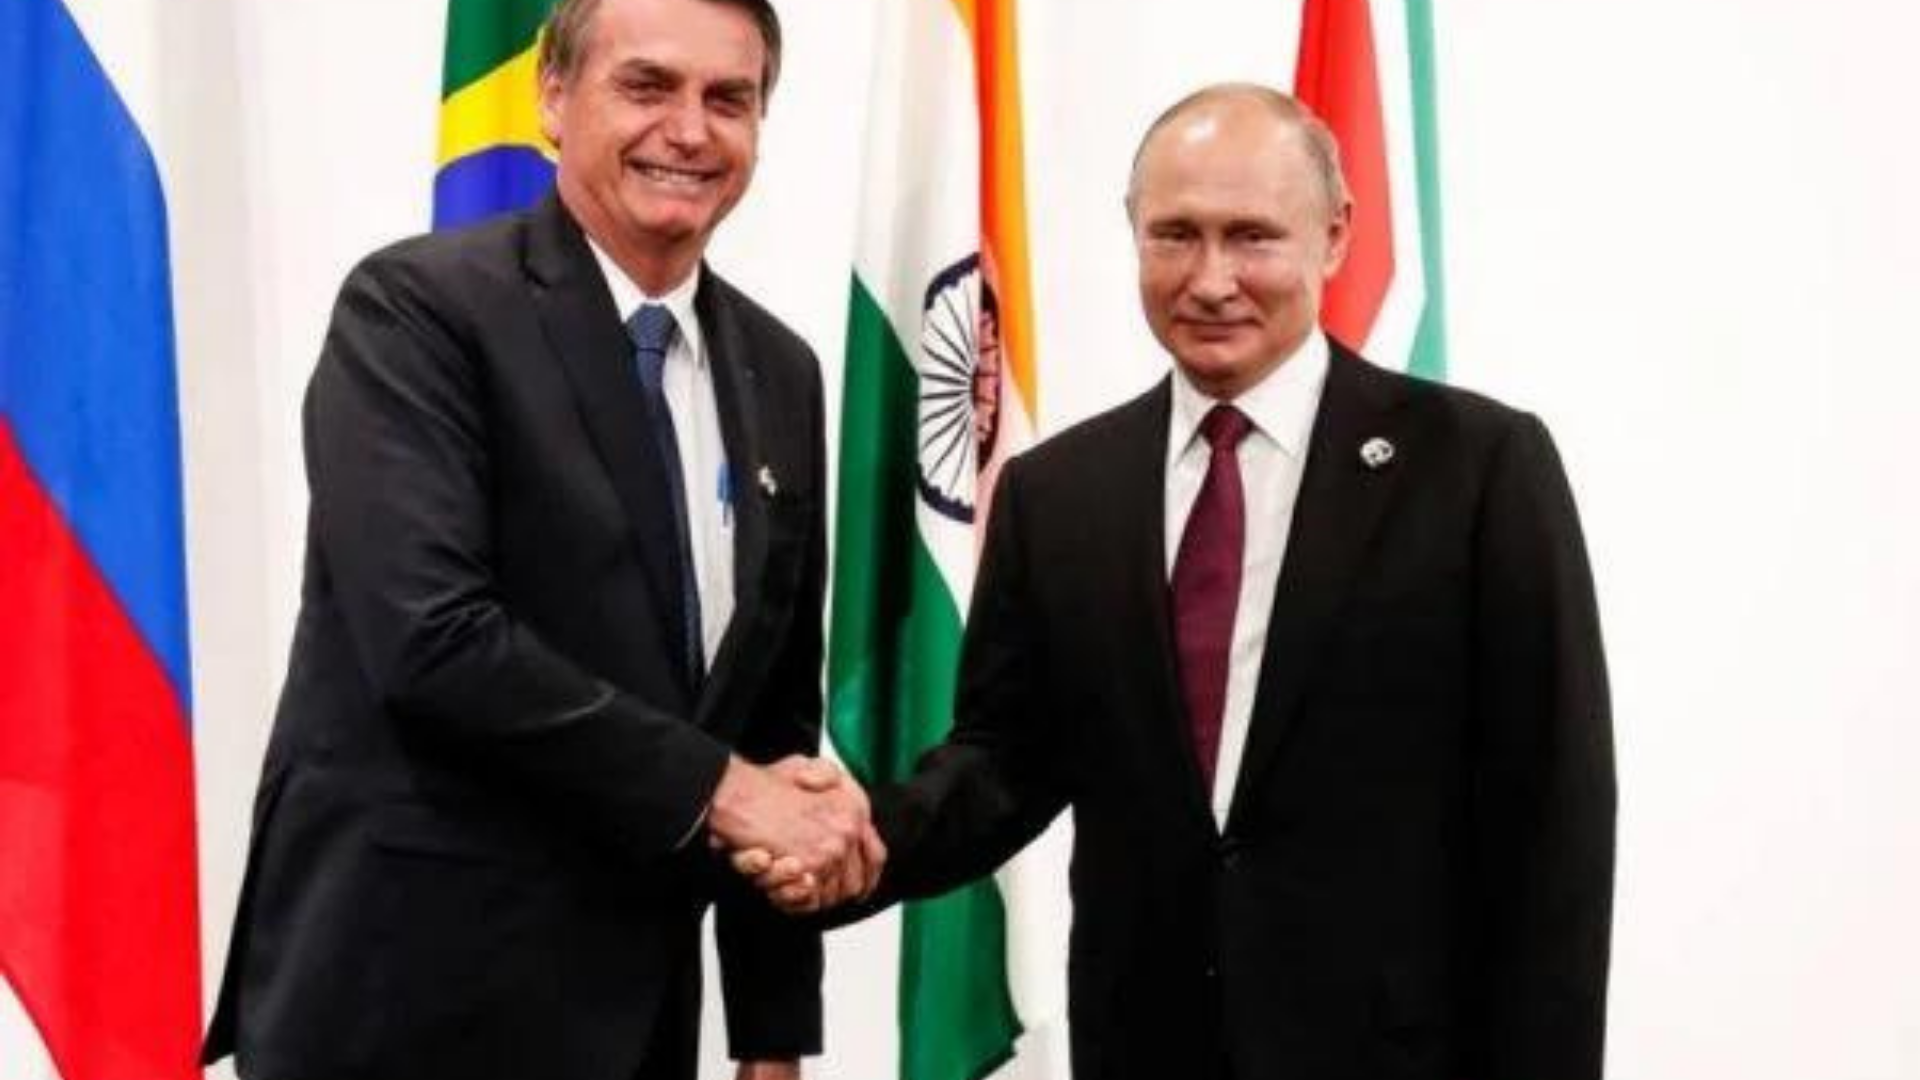 Bolsonaro em aproximação com Putin. Ele aperta a mão de Vladimir Putin, os dois usam ternos pretos, Bolsonaro com gravata azul e Putin com gravata vermelha. Ao fundo, há algumas bandeiras, incluindo a do Brasil.